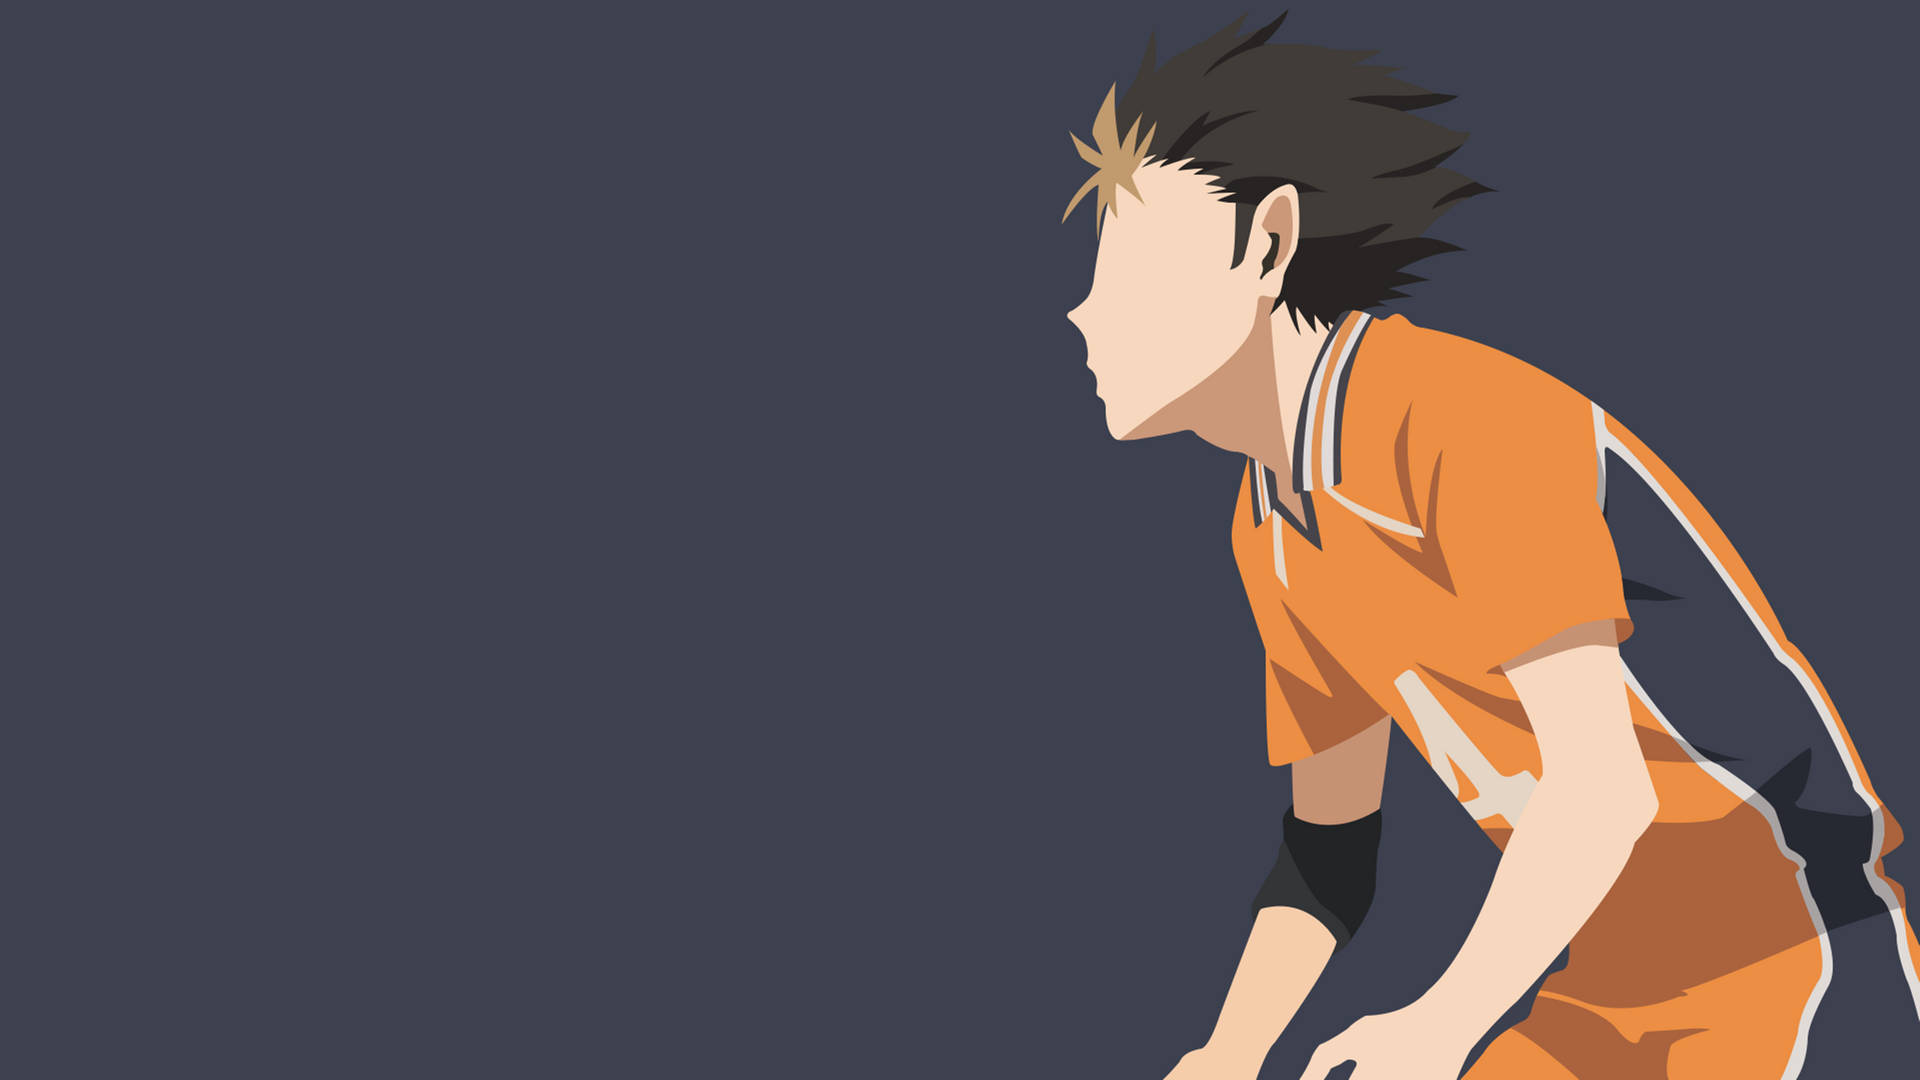 Haikyuu 4K Hinata Volleyball Side-Angle Wallpaper